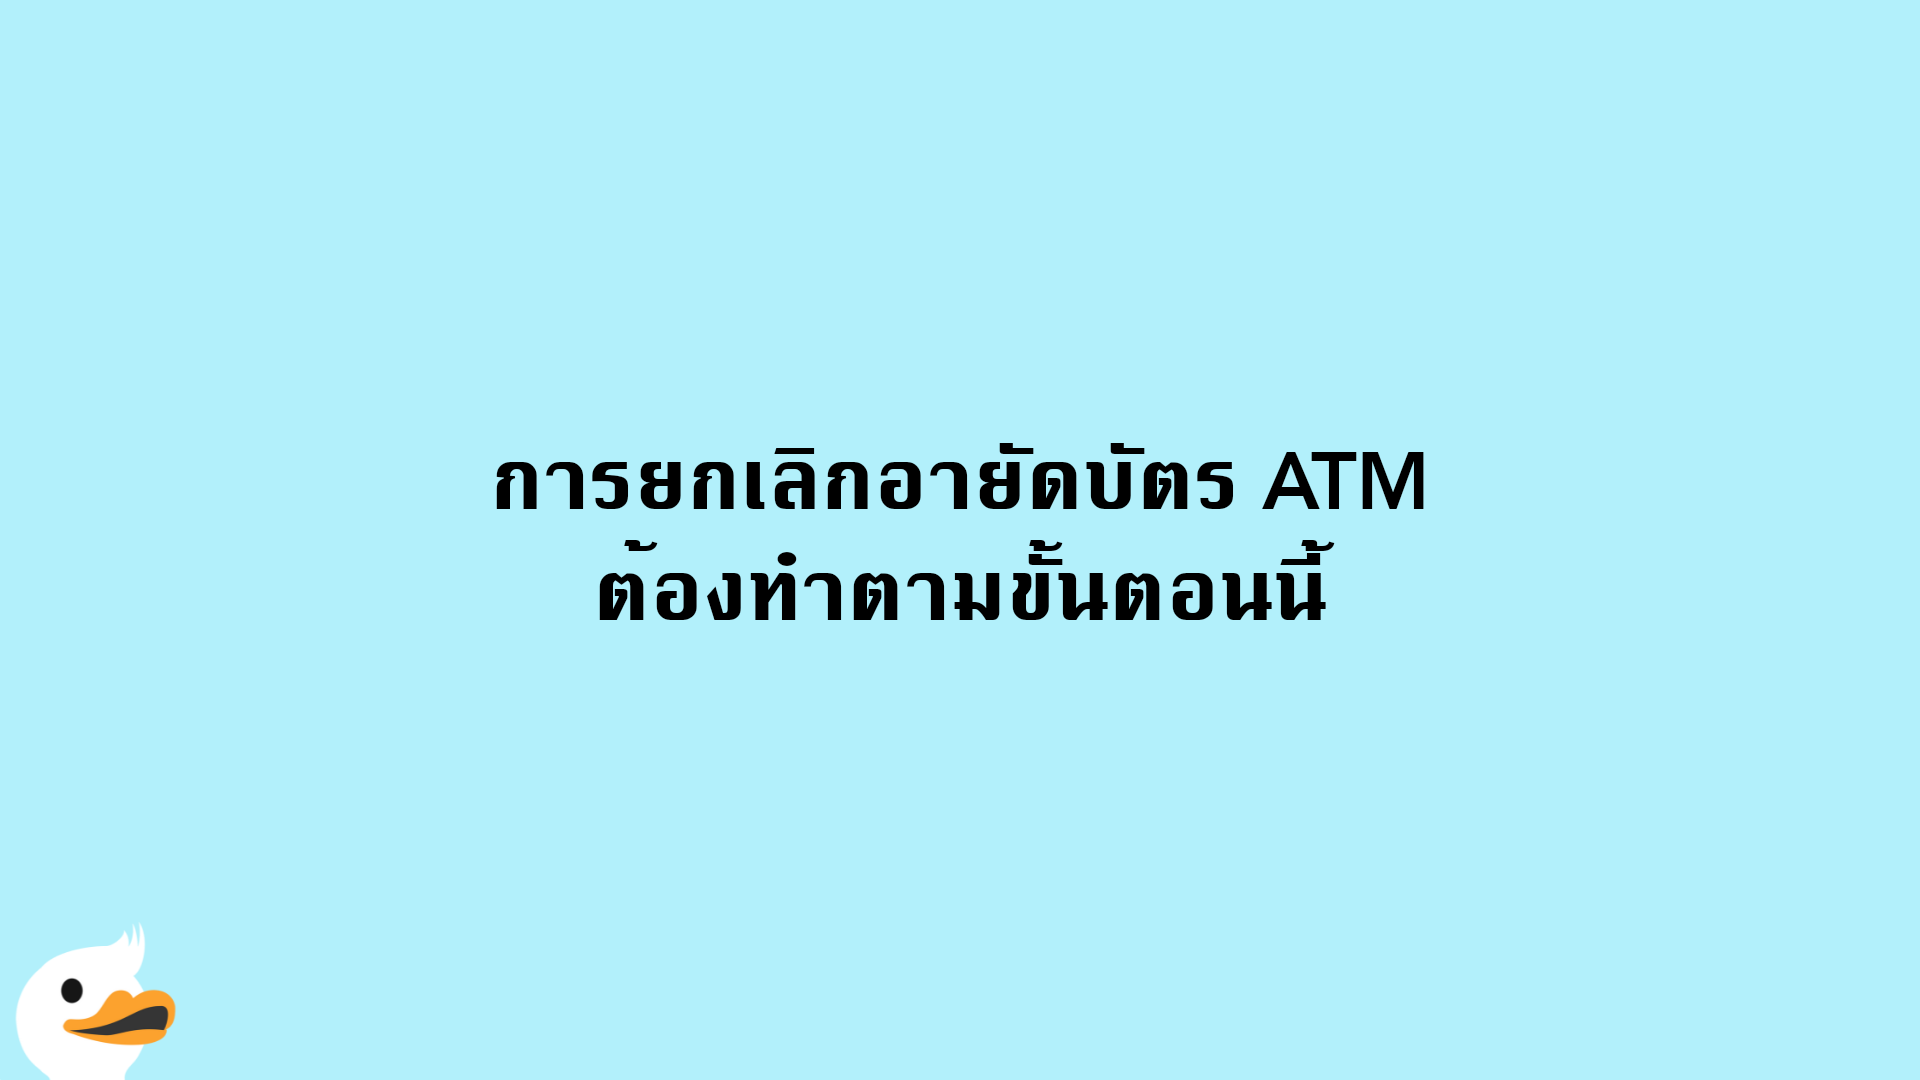 เคยอายัดบัตร Atm แล้วจะยกเลิกต้องทำอย่างไร? | Moneyduck Thailand